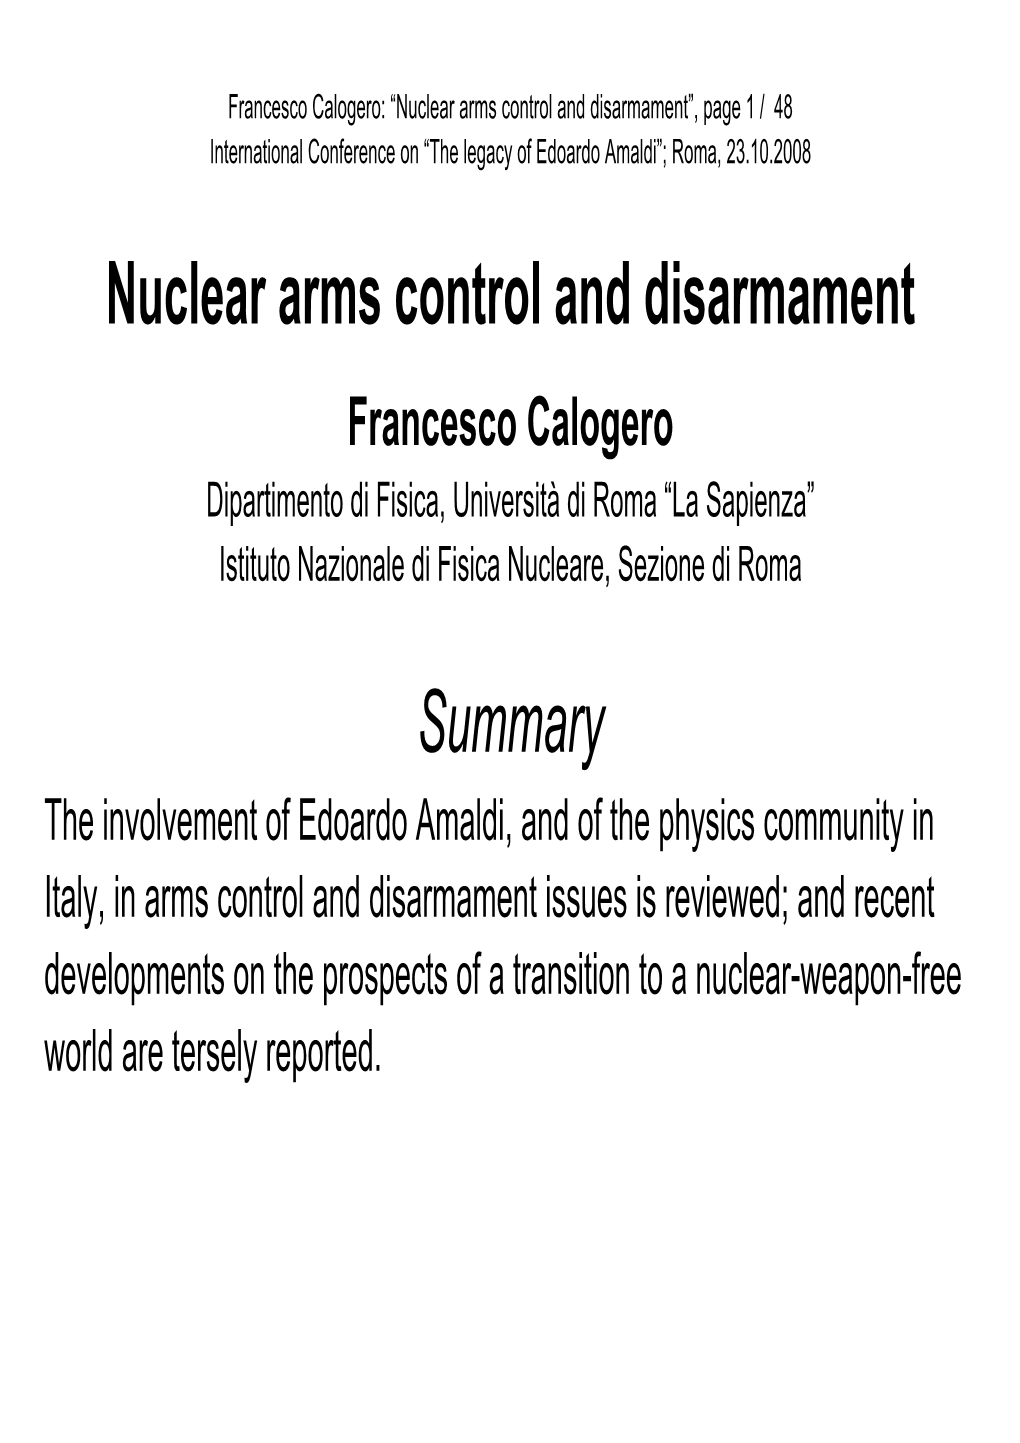 Nuclear Arms Control and Disarmament Summary